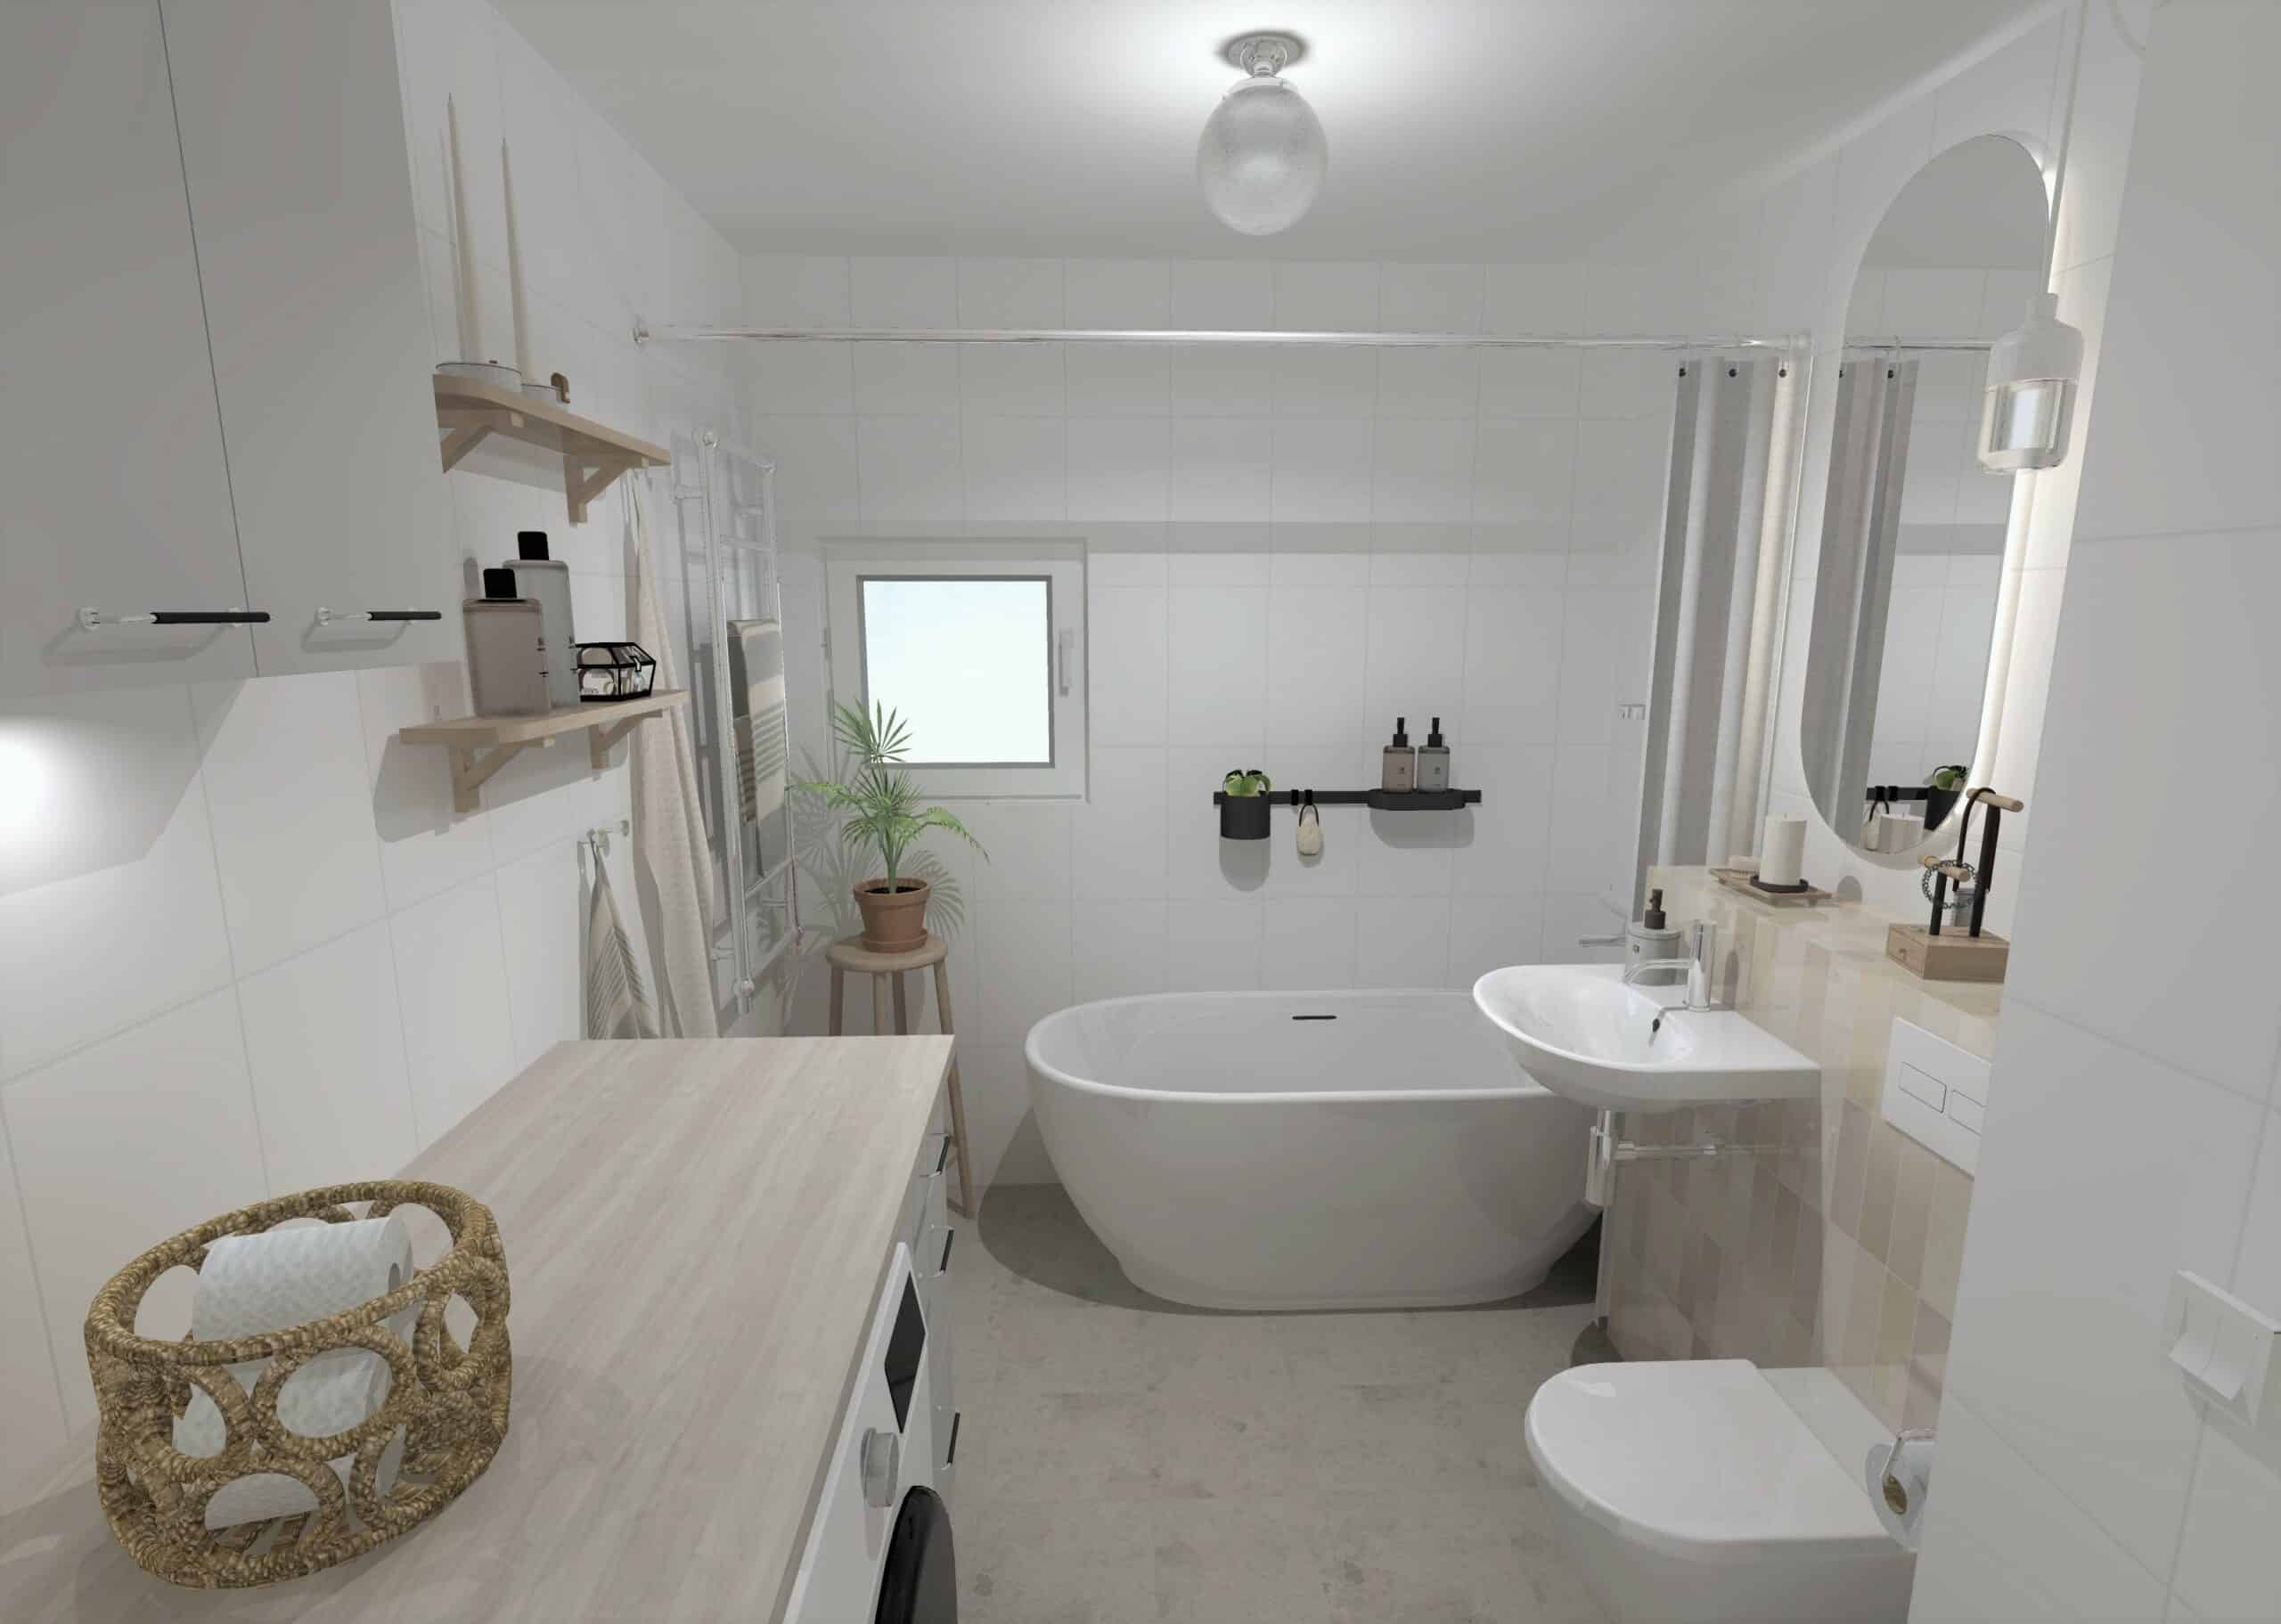 Planera badrumrenoveringen i 3D! Landqvist badrum hjälper dig att renovera badrum i Uppsala med omnejd.